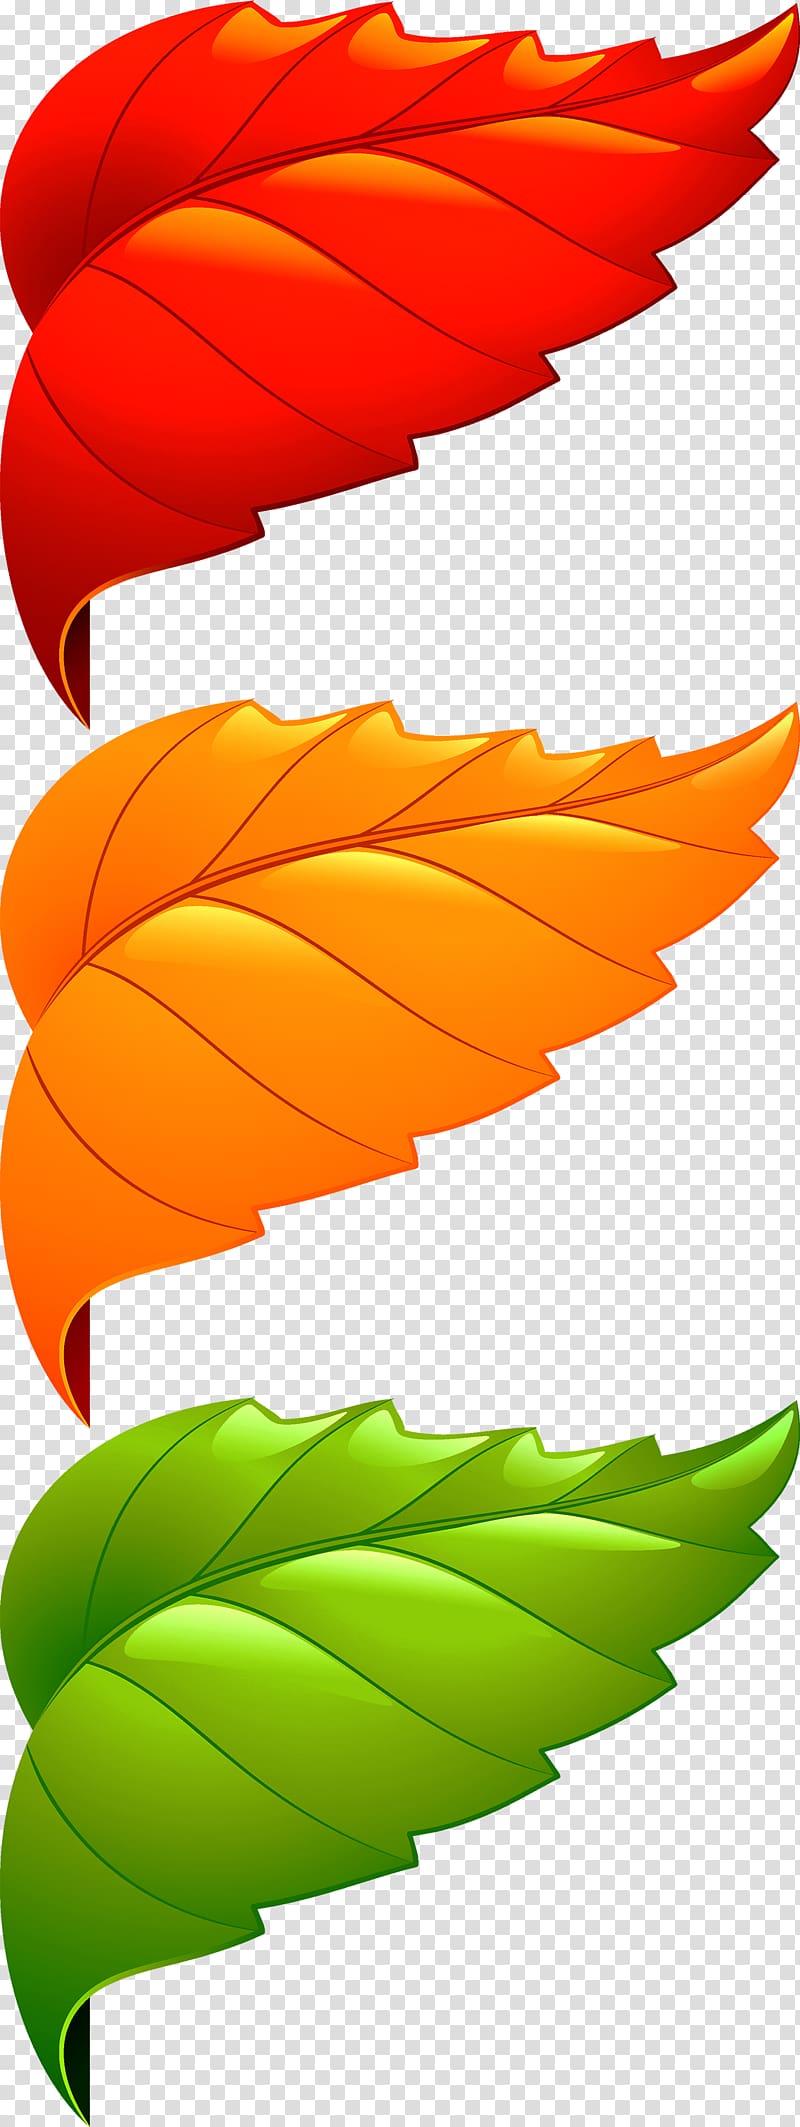 Maple leaf Adobe Illustrator, Corner decorative leaves transparent background PNG clipart